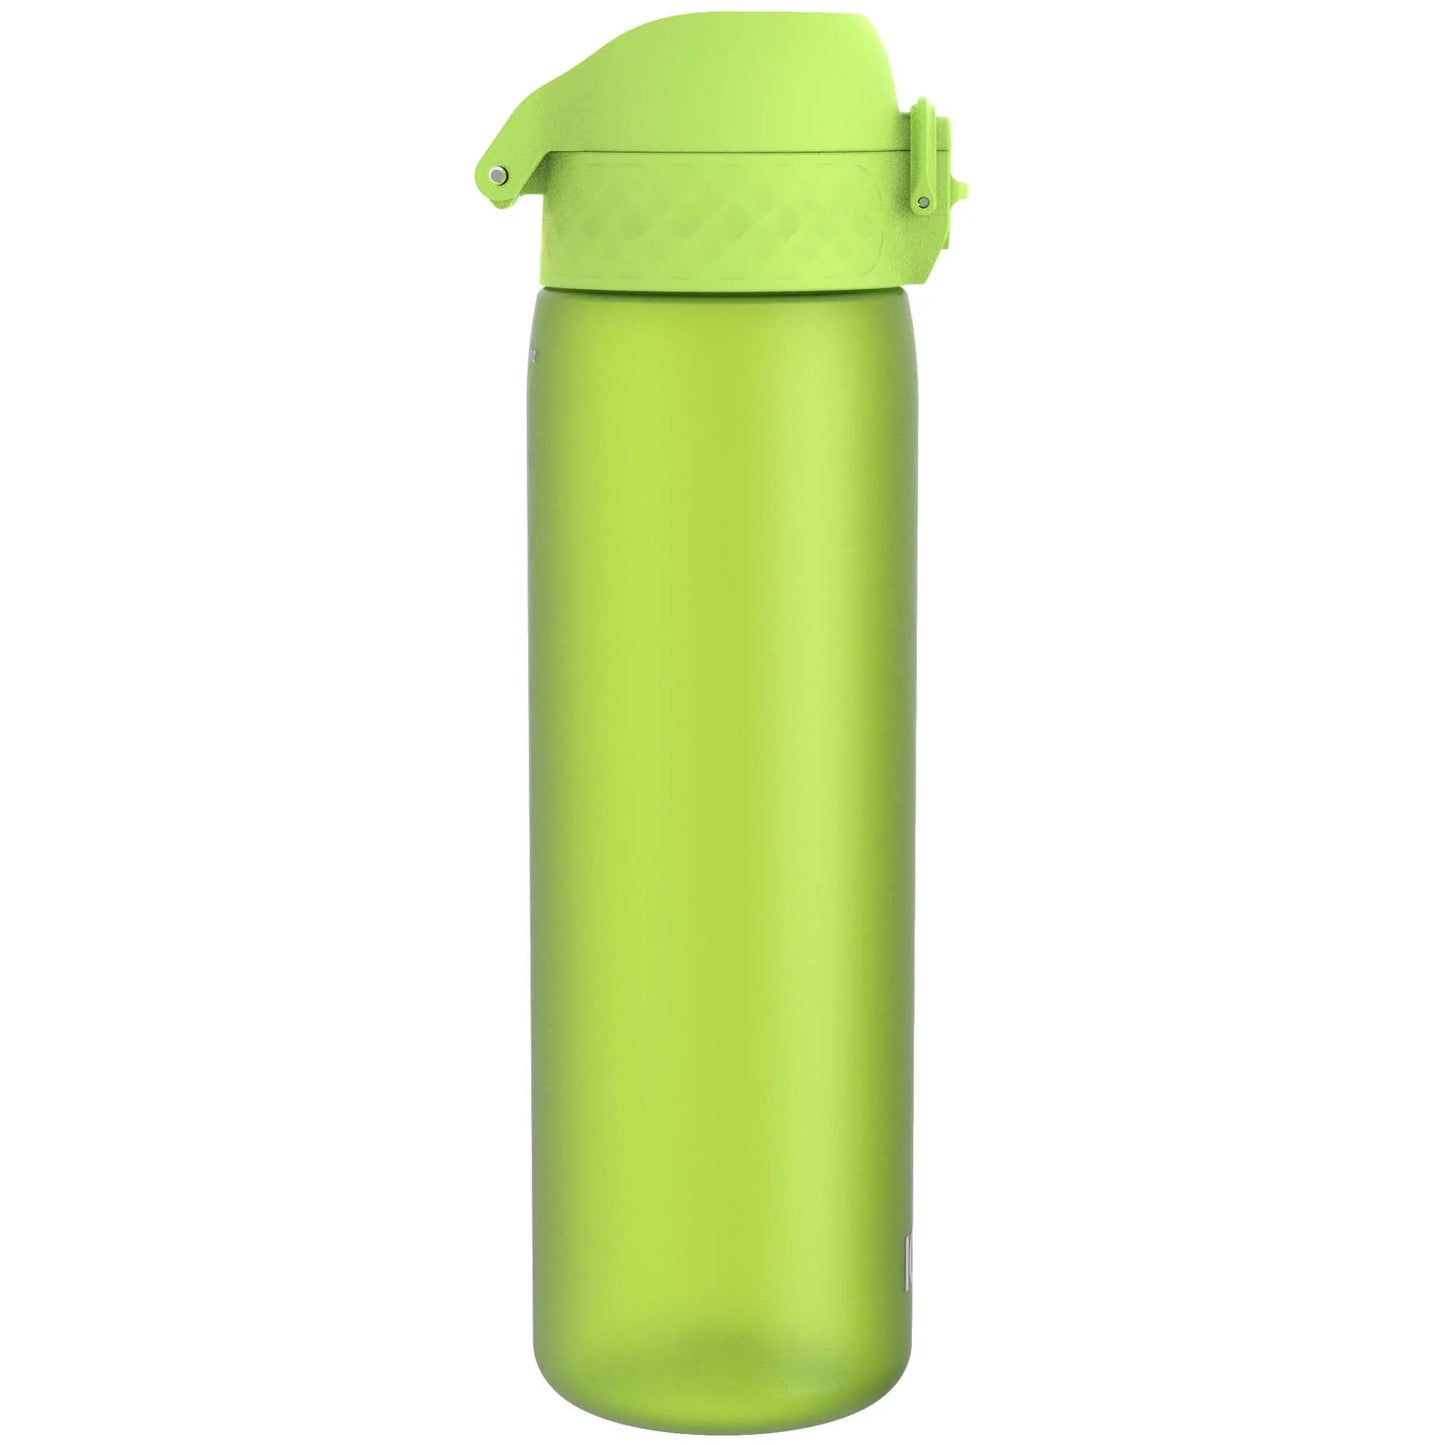 Leak Proof Slim Water Bottle, Recyclon™, Green, 500ml (18oz) Ion8